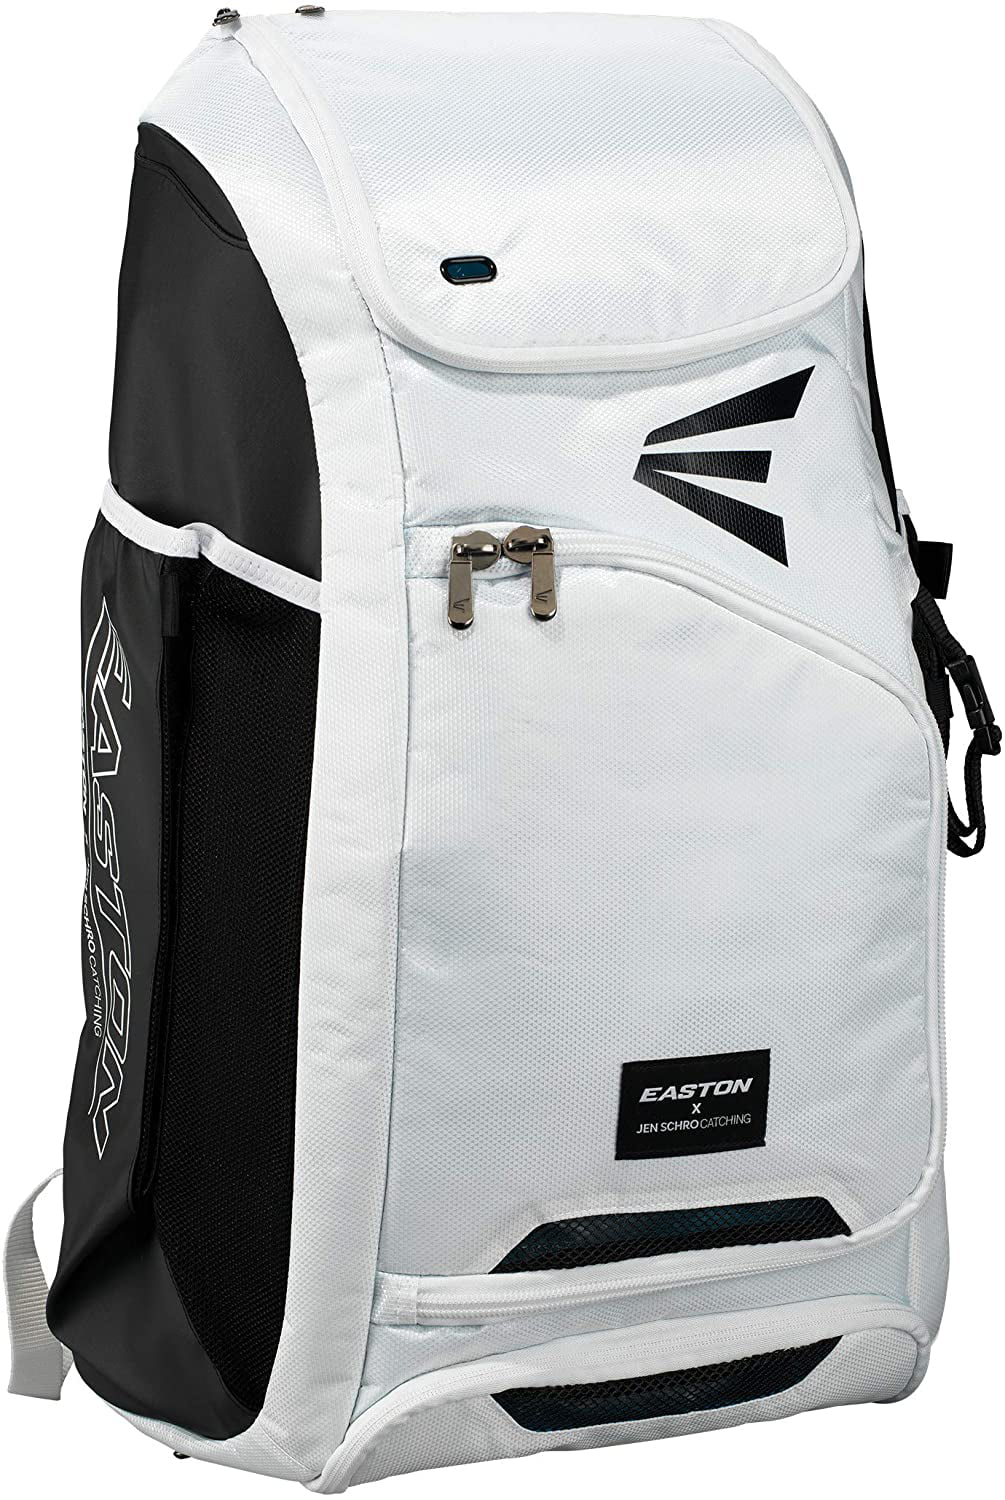 Easton E610CBP Black Catcher's Bat Pack Backpack Equipment Bag Baseball/Softball 